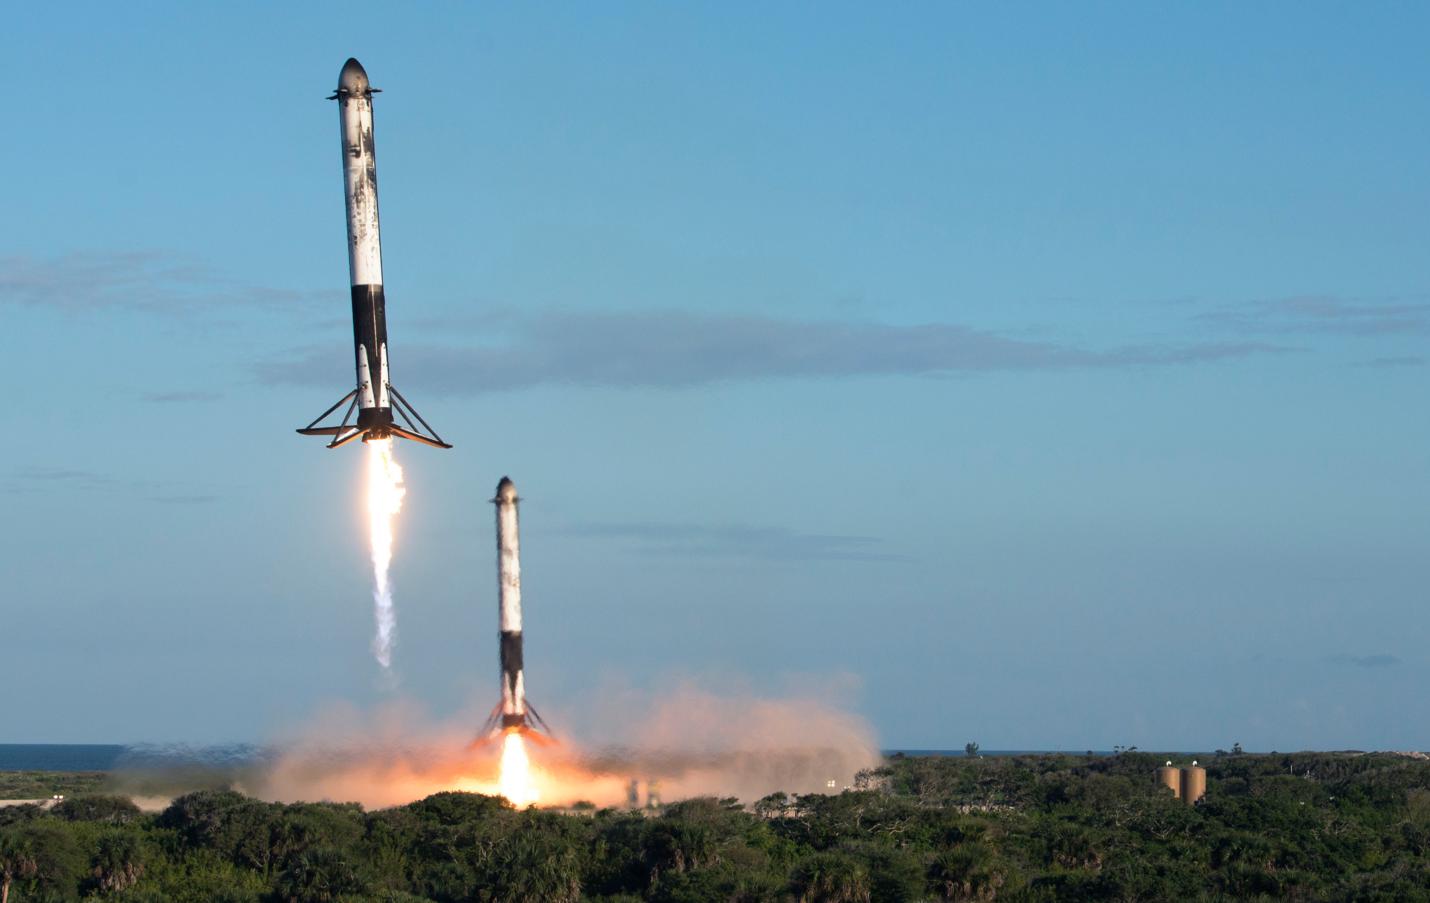 День Космонавтики: Посадка 2-х многоразовых ракетных ускорителей самой мощной в мире сегодня ракеты-носителя Falcon Heavy  компании SpaceX после успешного запуска спутника Arabsat 6A, фото сделано 12 апреля 2019 года в космическом центре им. Кеннеди